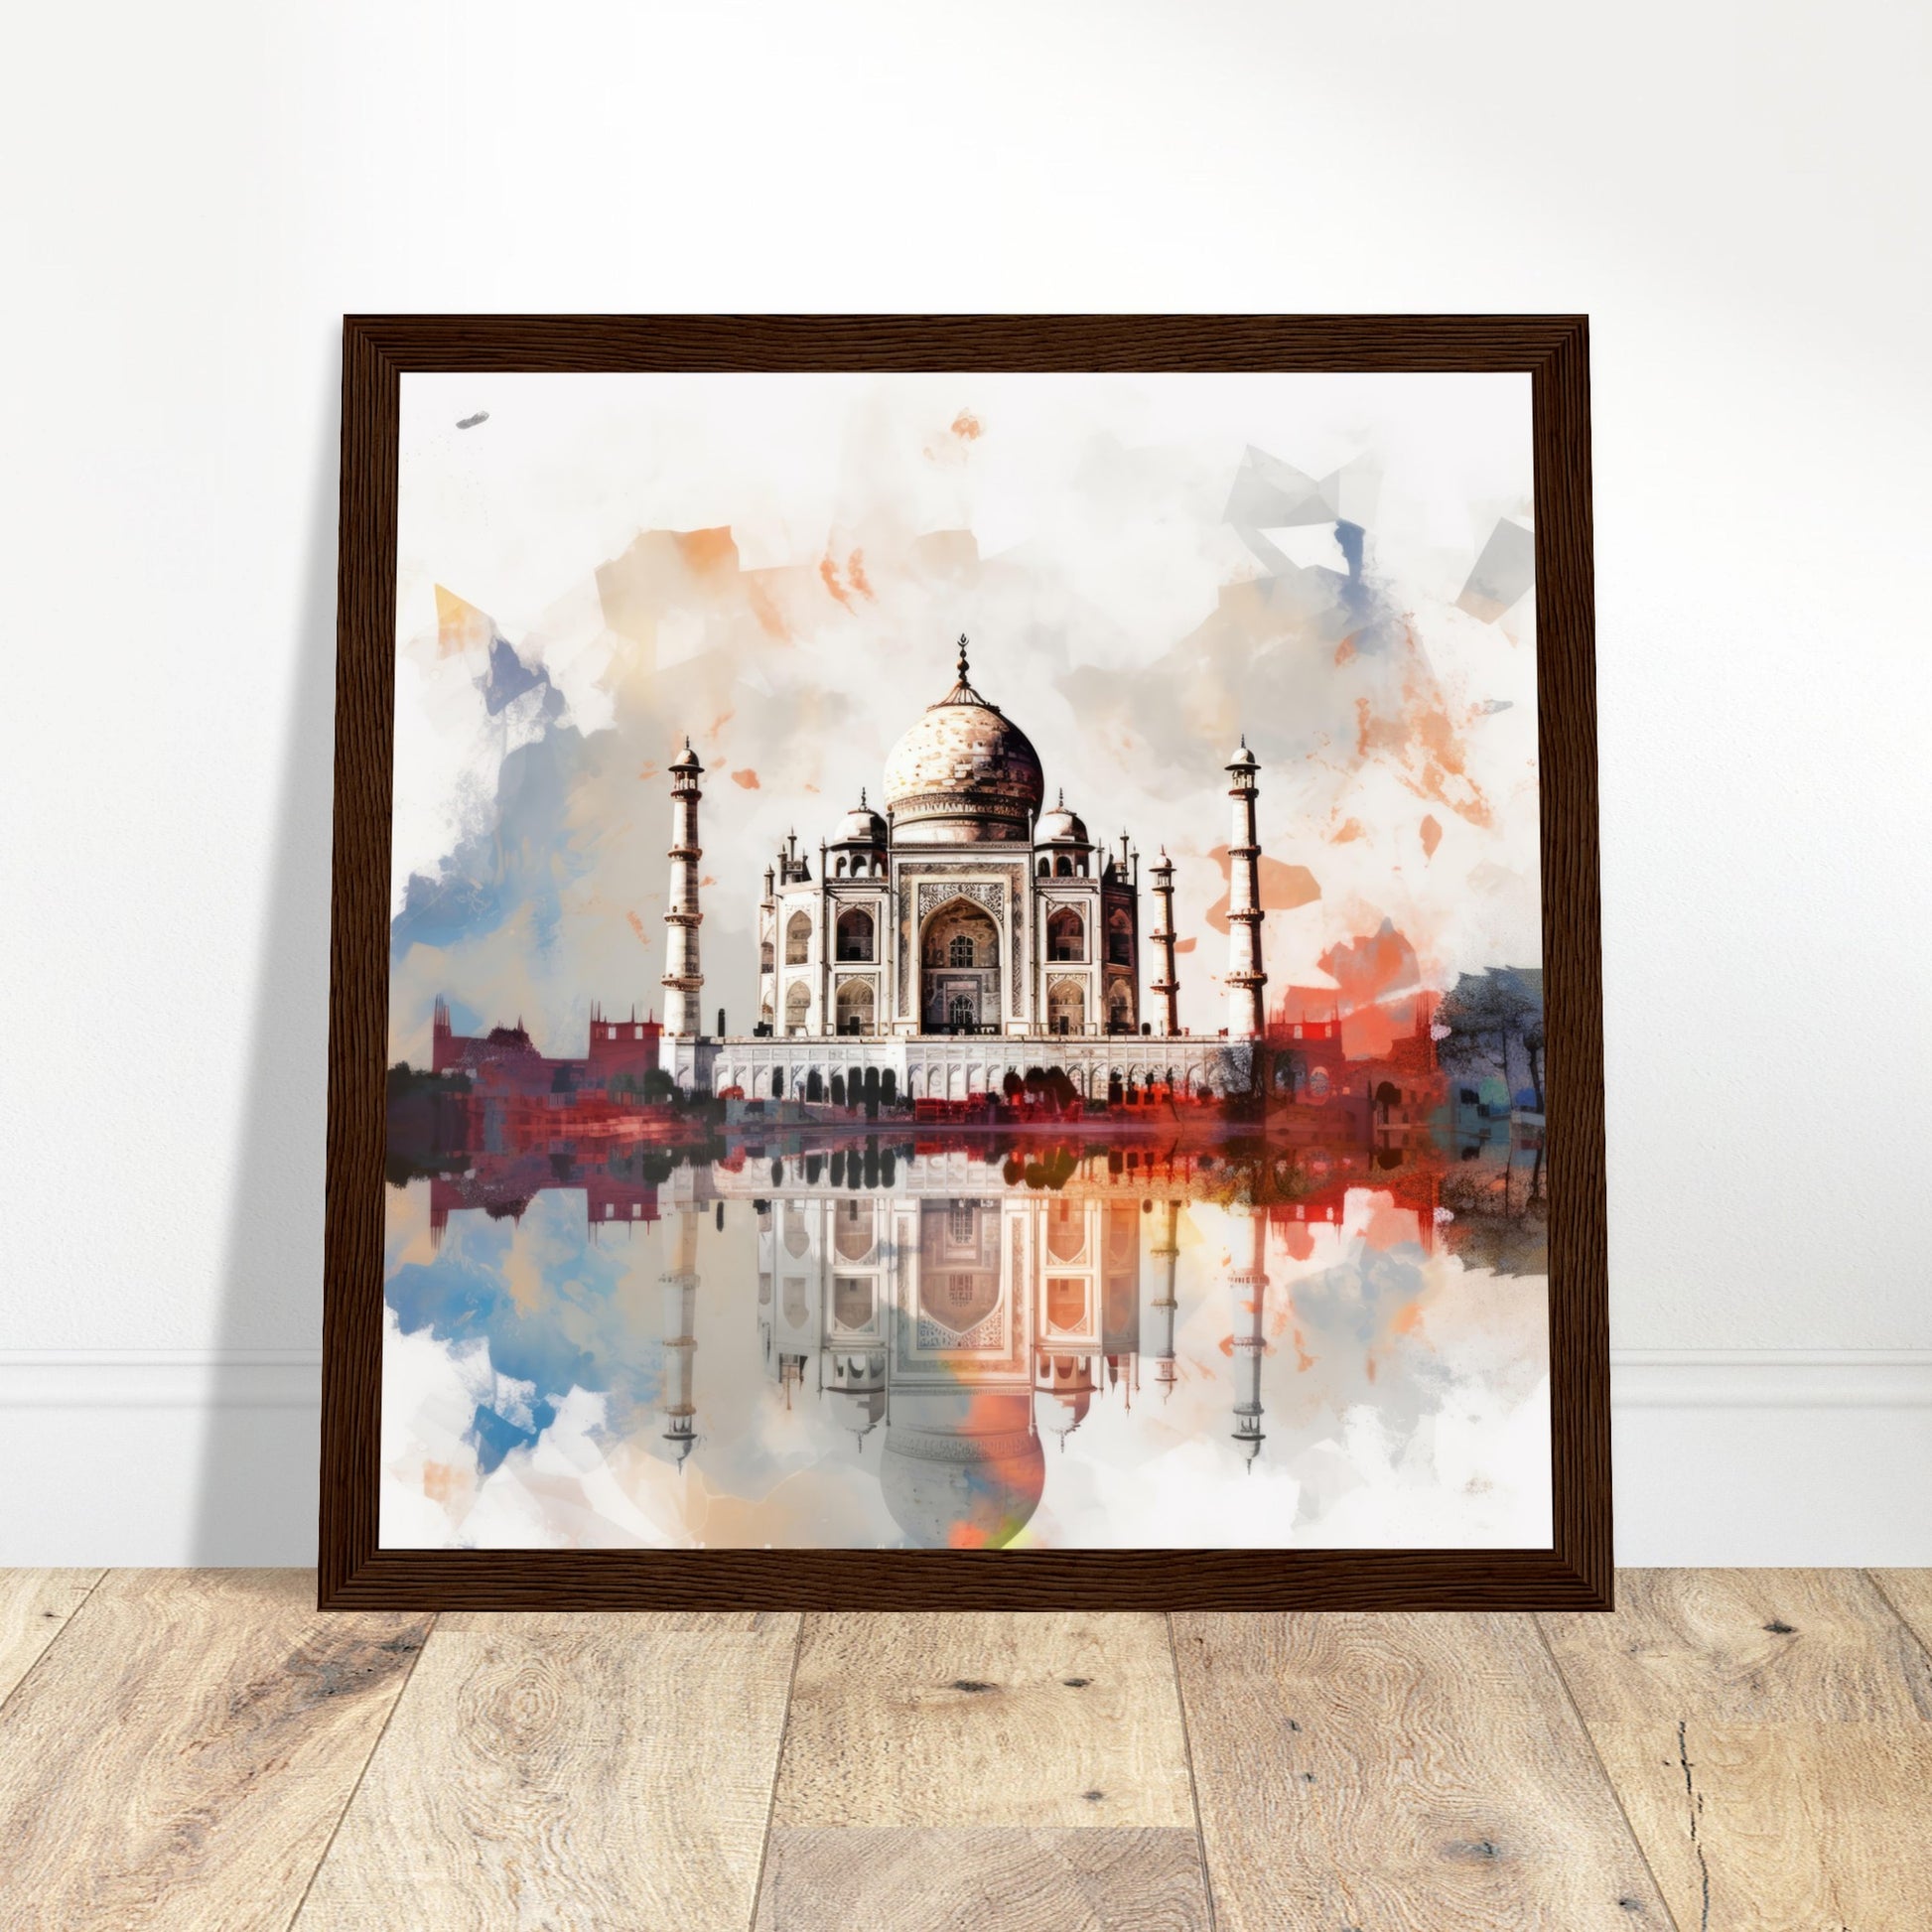 Taj Mahal Abstract Art - Print Room Ltd Black frame 30x30 cm / 12x12"